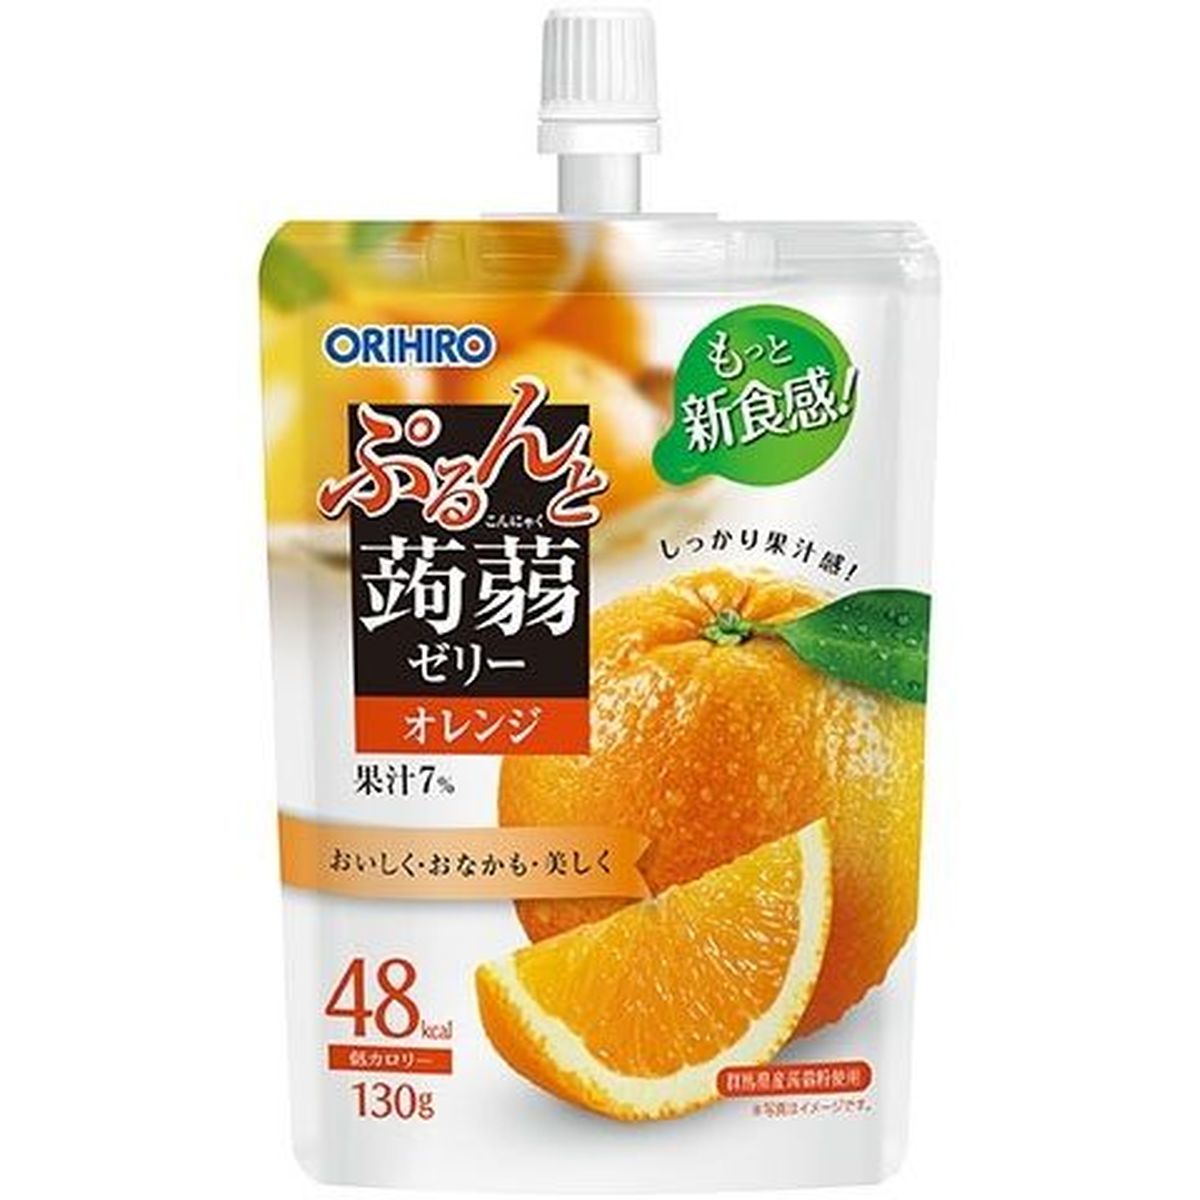 【8個入リ】オリヒロ プルン蒟蒻ゼリースタンディング オレンジ 130g